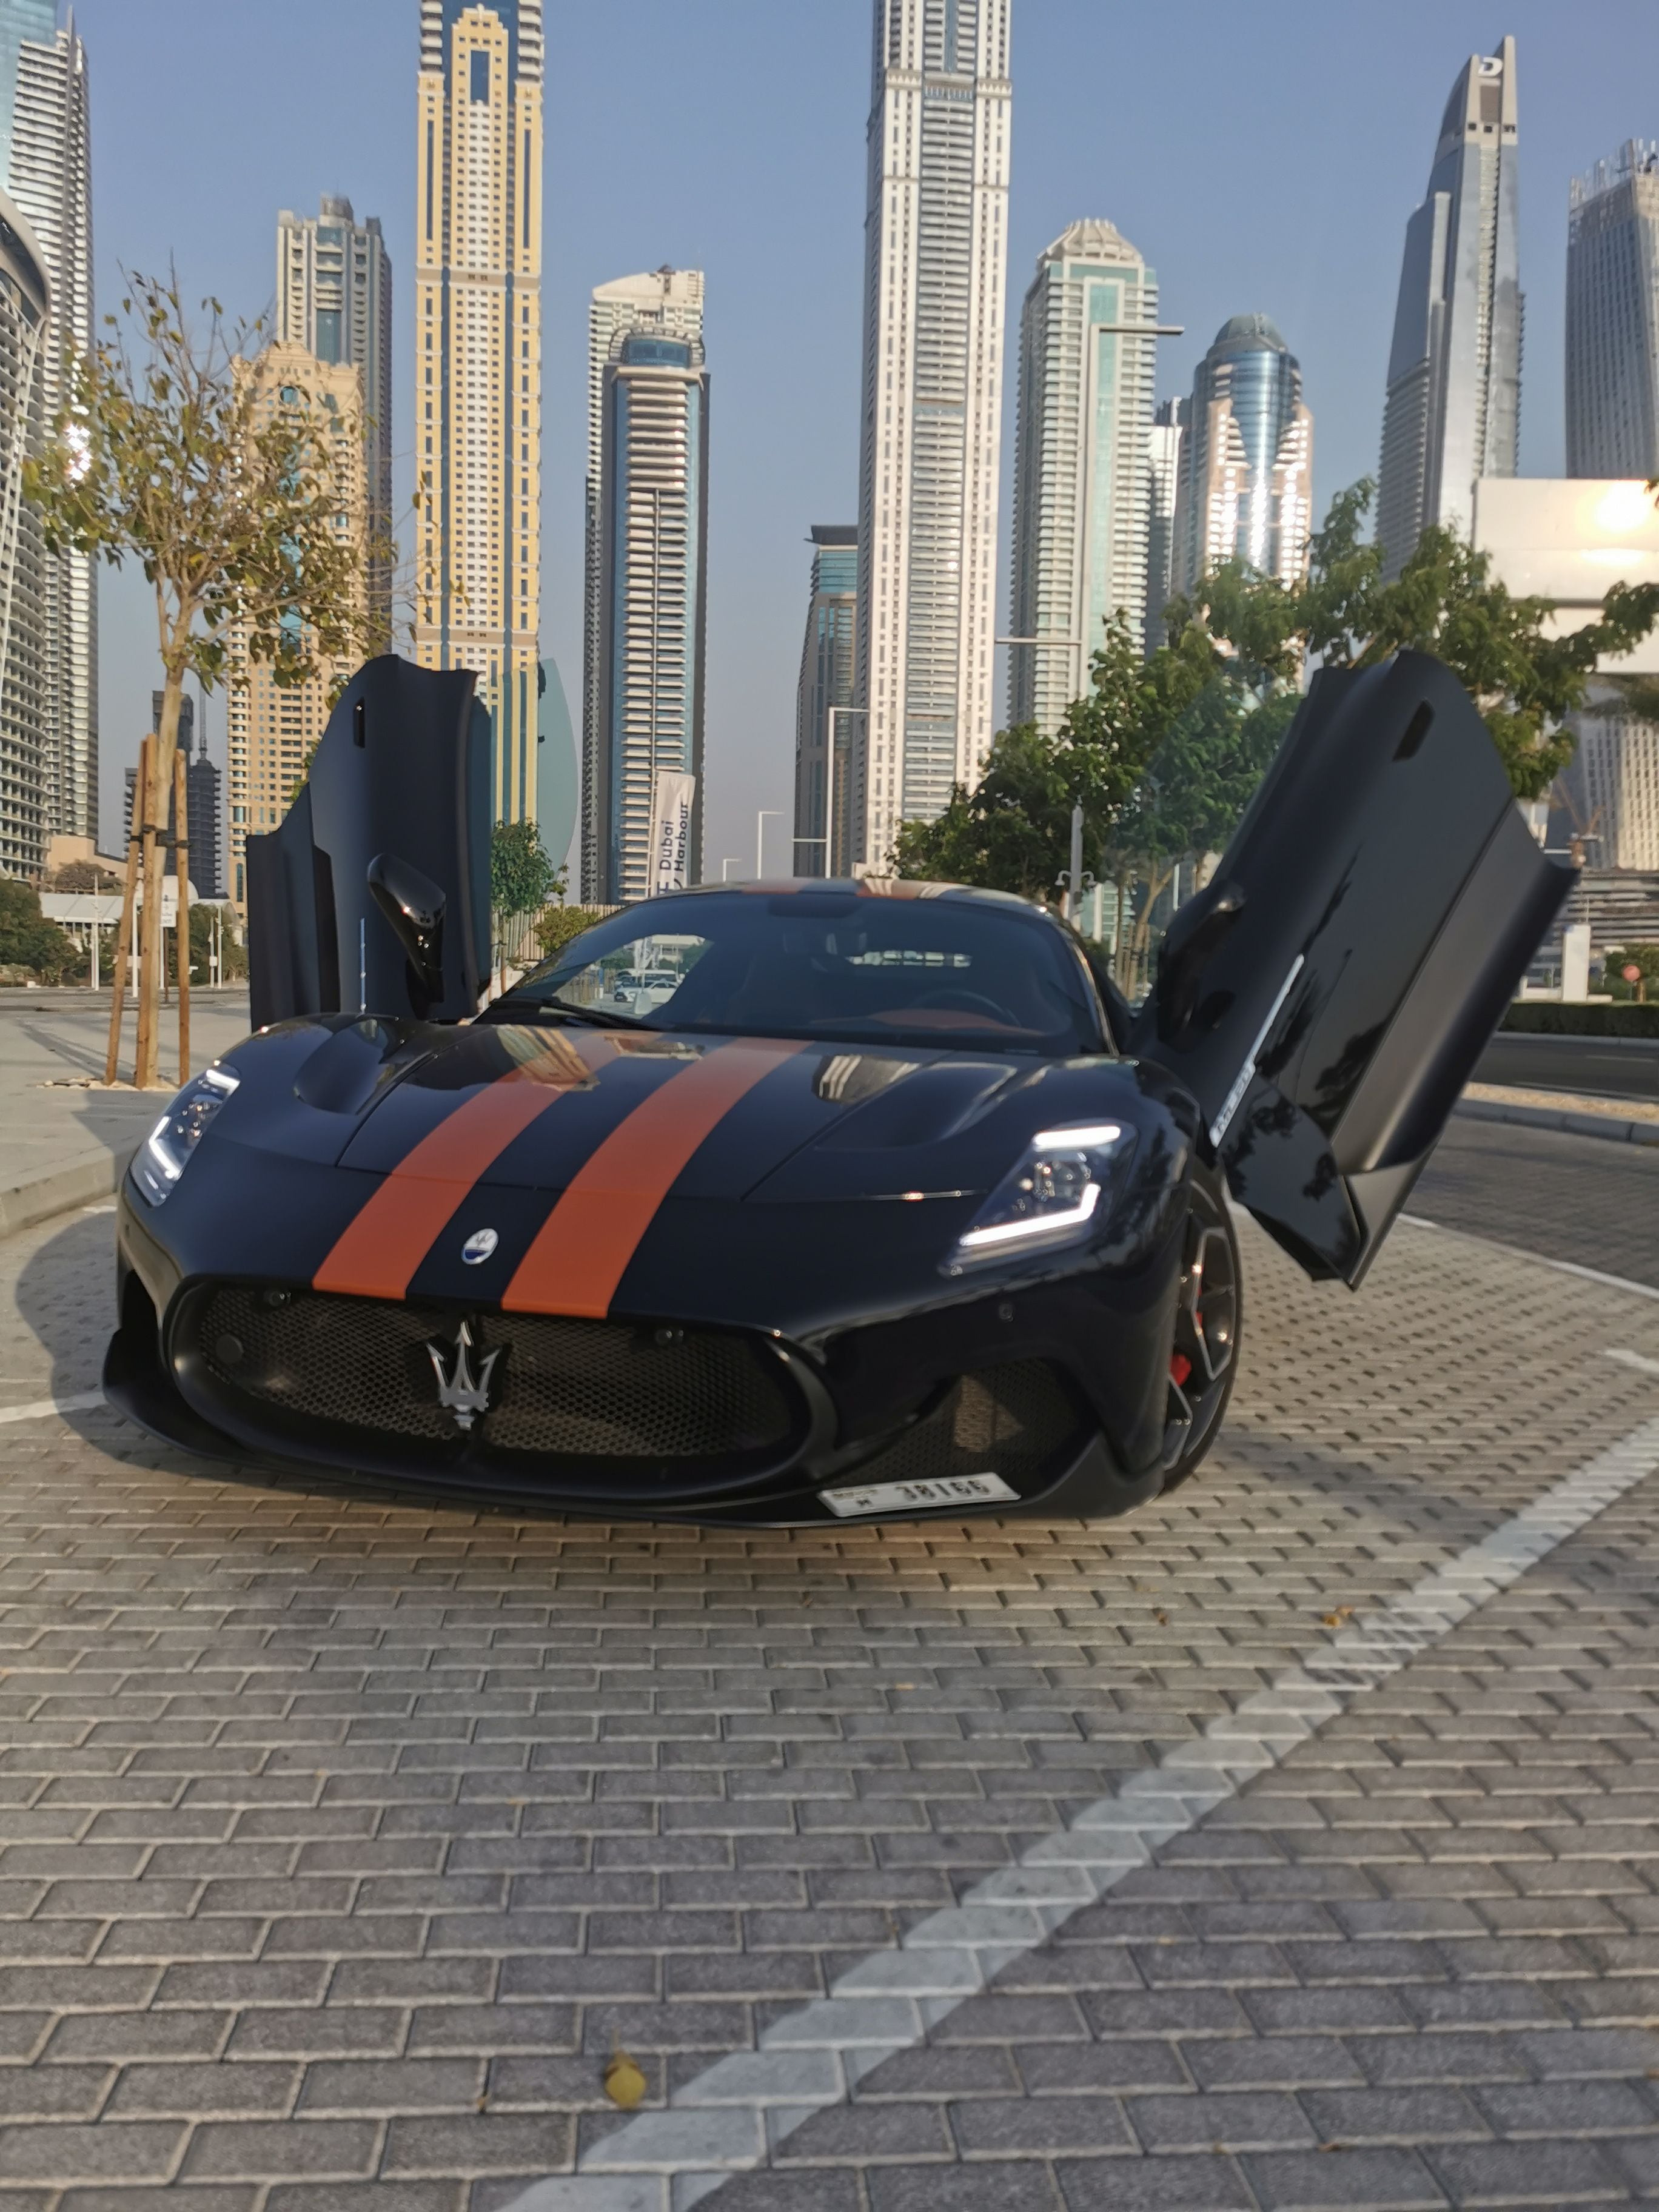 ABARTH Dubai National Auto  THE ORIGINAL POCKET SUPERCAR.